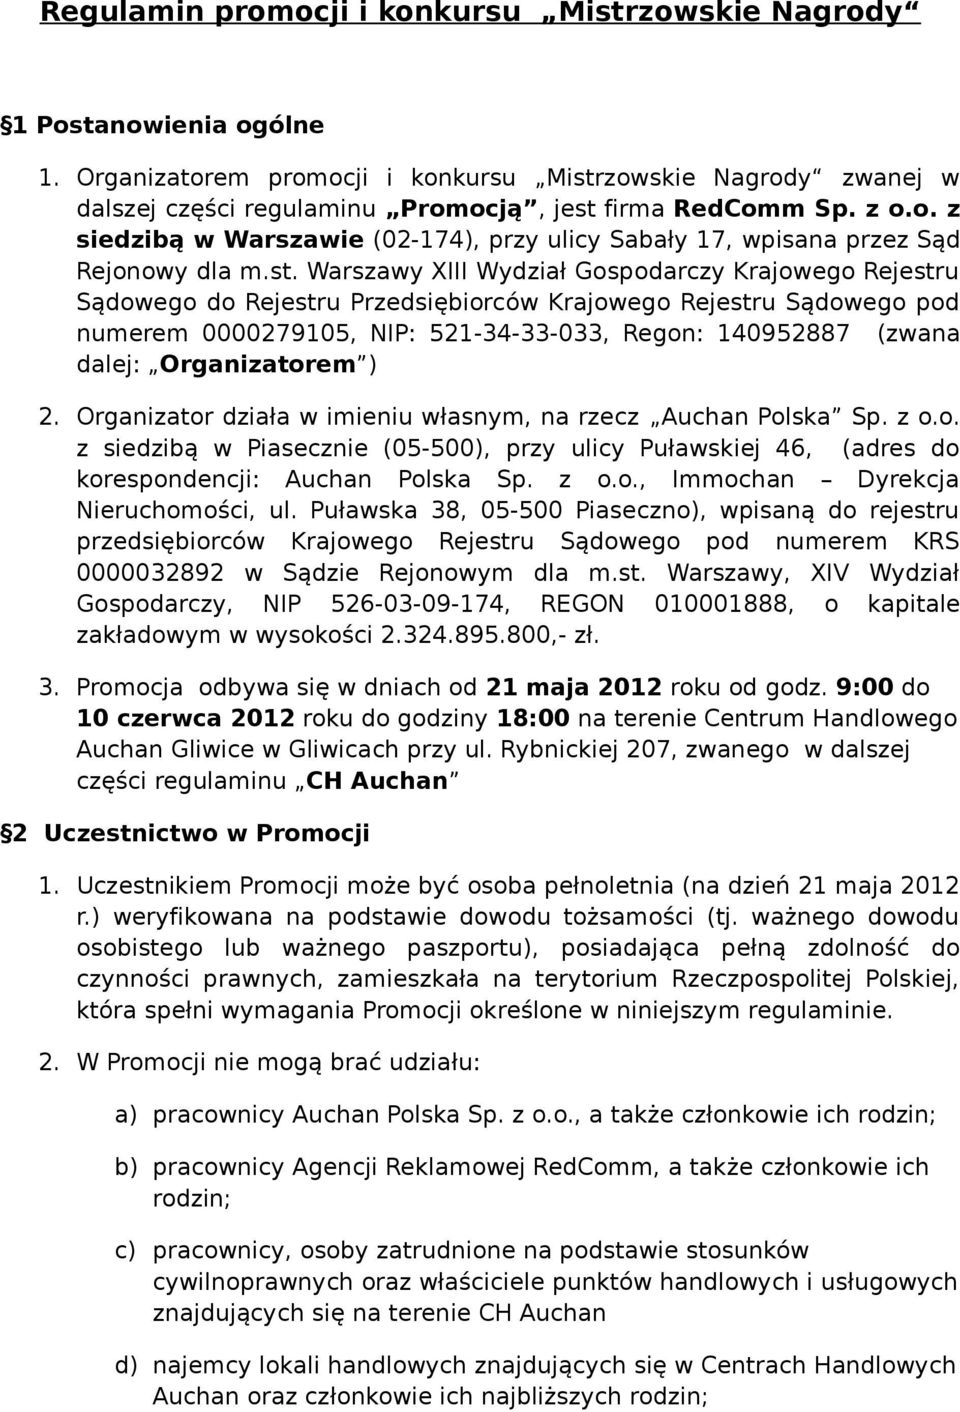 Warszawy XIII Wydział Gospodarczy Krajowego Rejestru Sądowego do Rejestru Przedsiębiorców Krajowego Rejestru Sądowego pod numerem 0000279105, NIP: 521-34-33-033, Regon: 140952887 (zwana dalej: